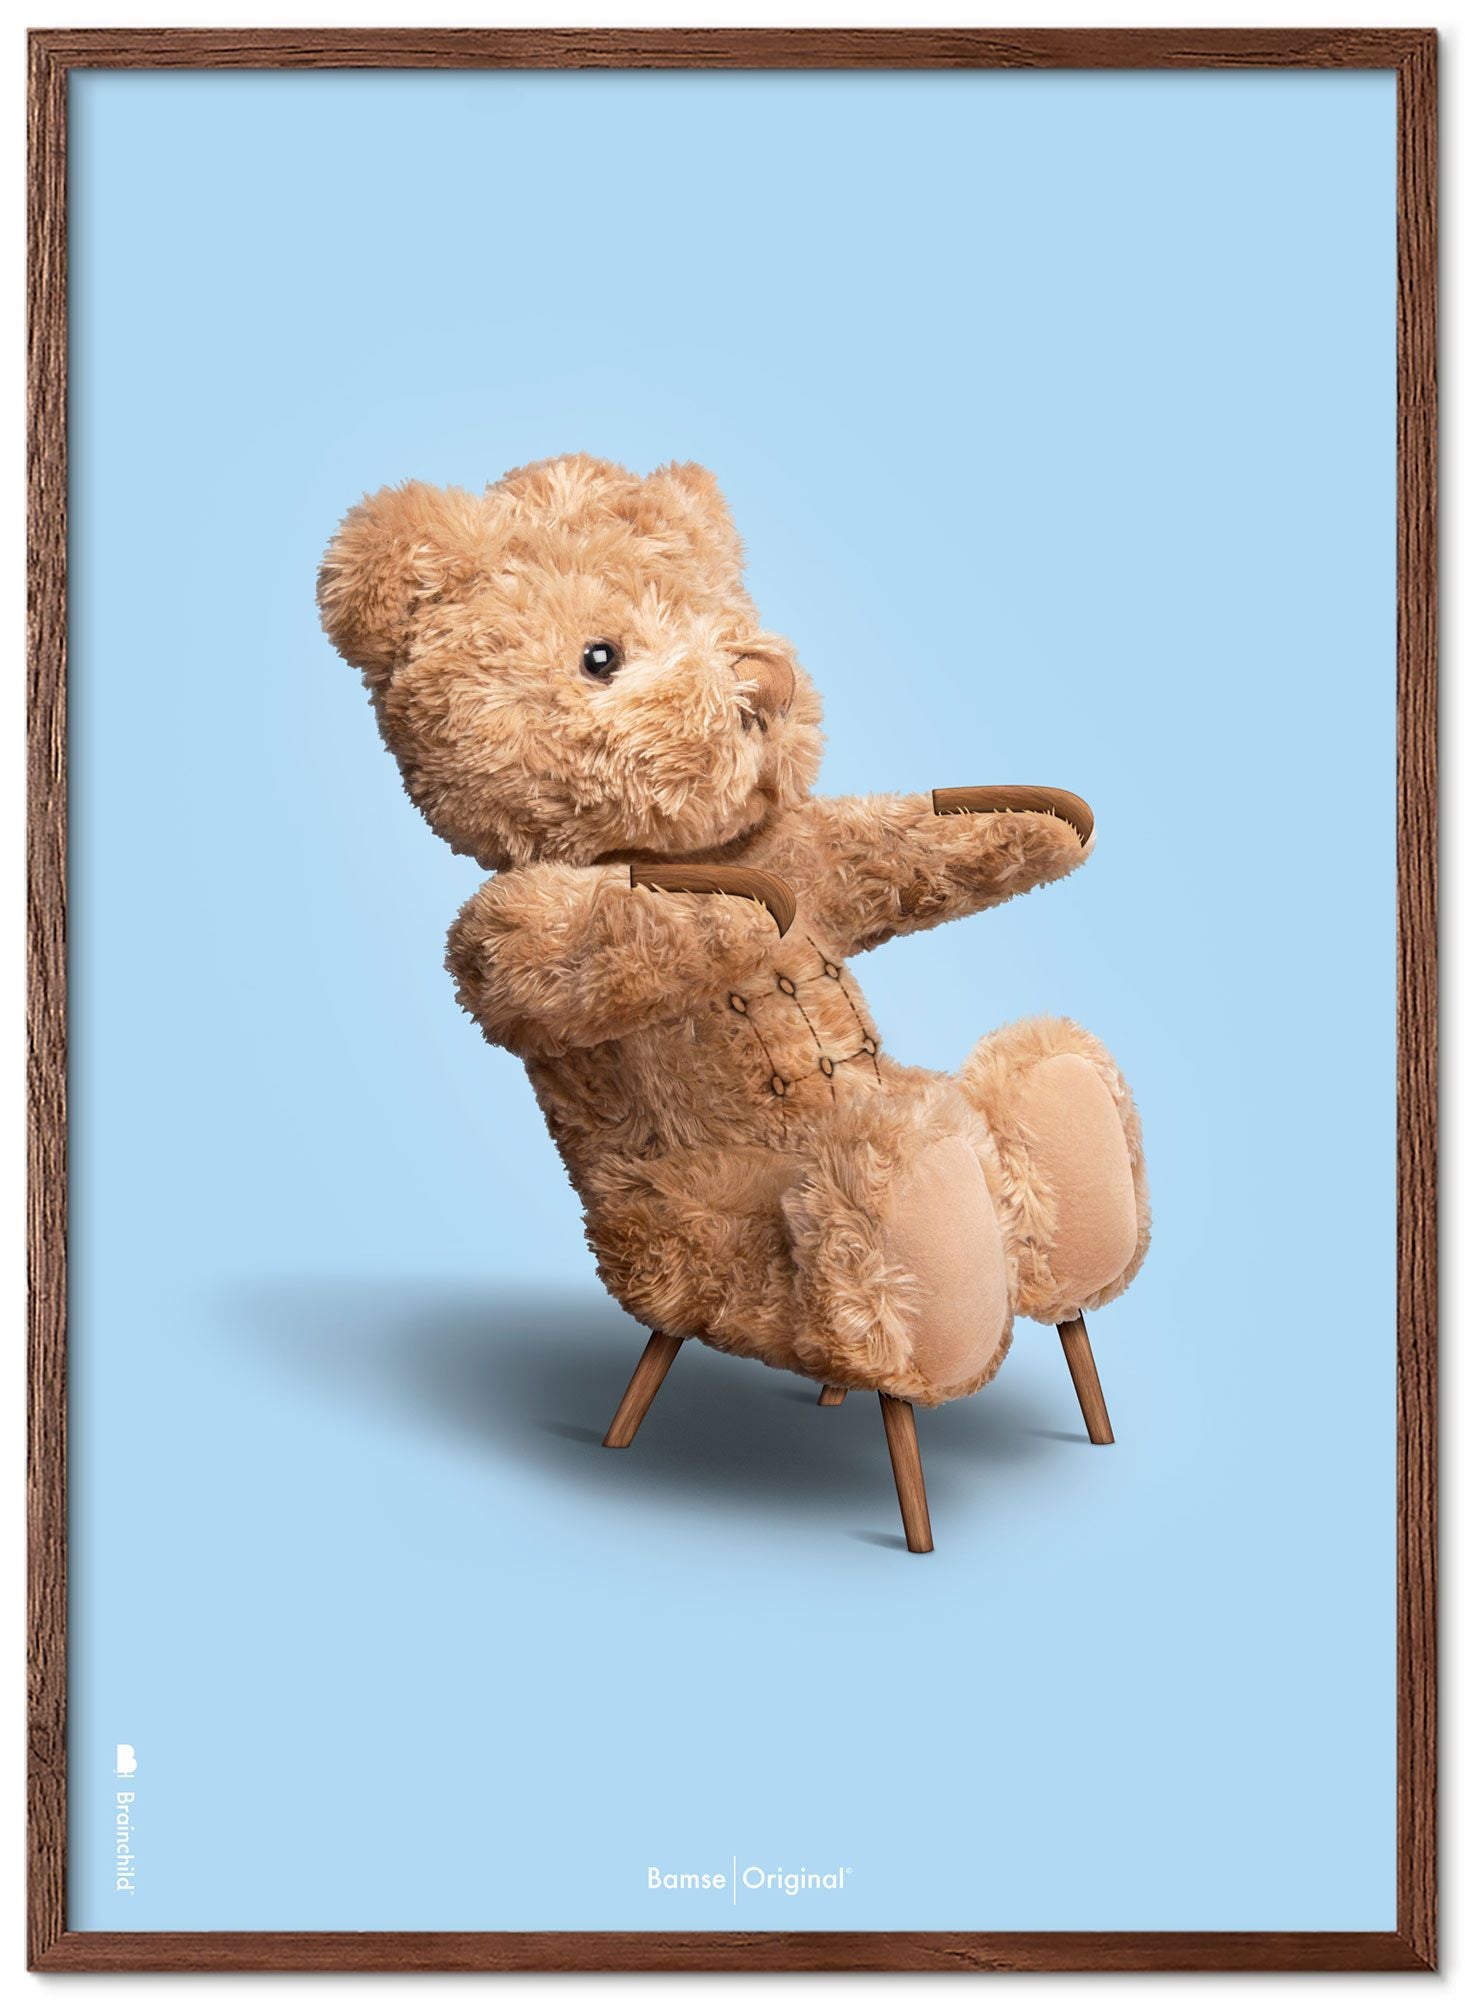 Brainchild Teddy Bear Classic plakát s tmavým dřevem rám Ram A5, světle modré pozadí